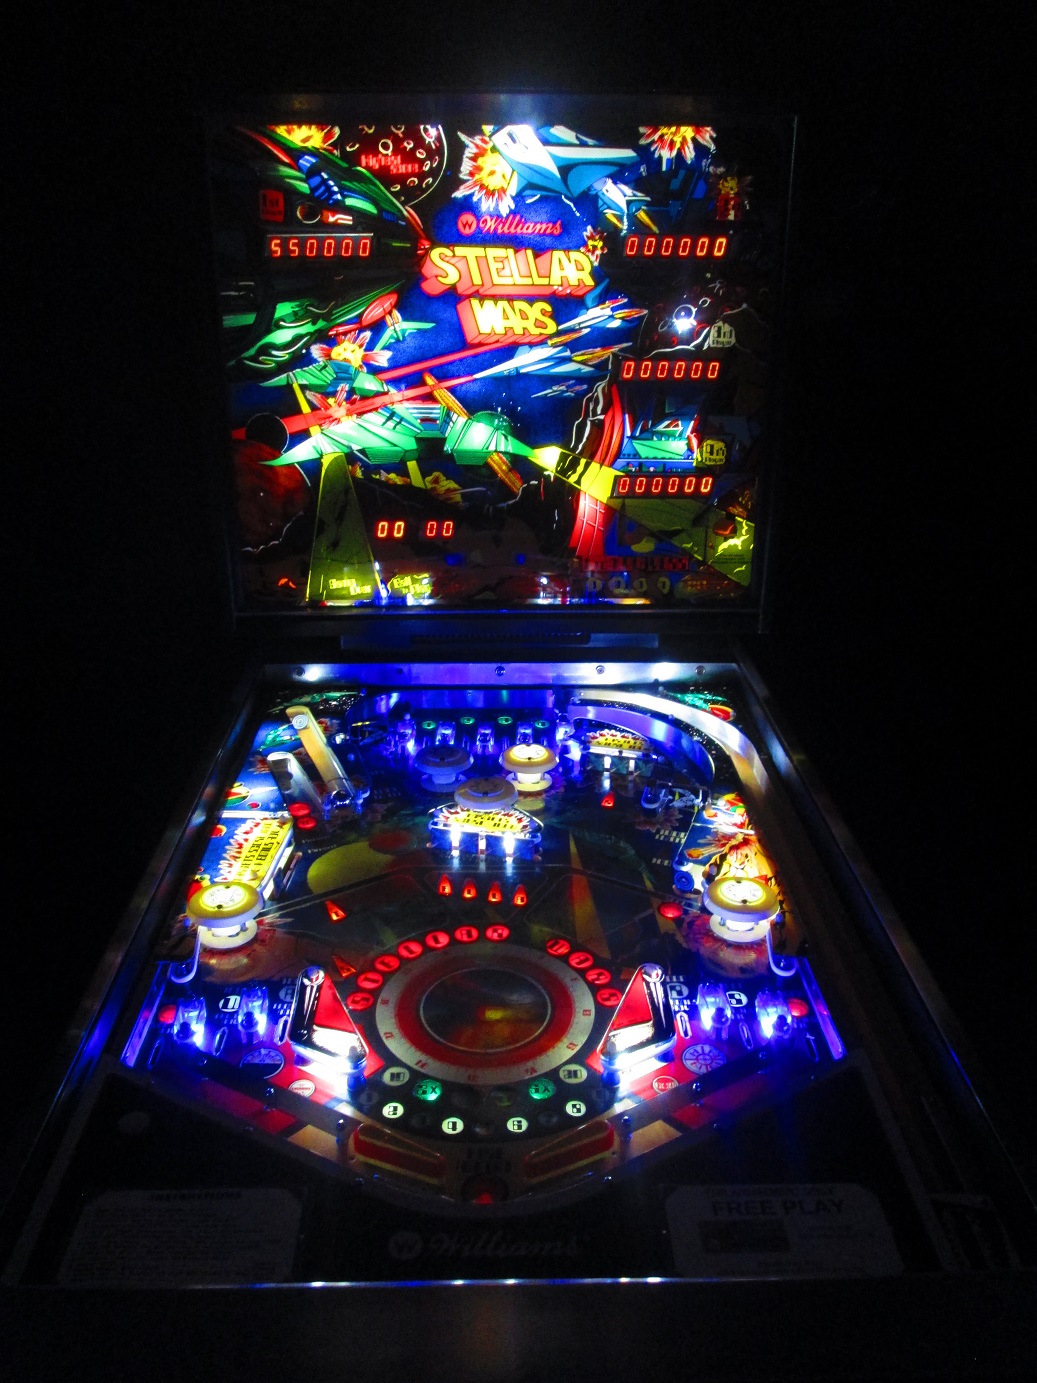 stellar wars pinball machine for sale